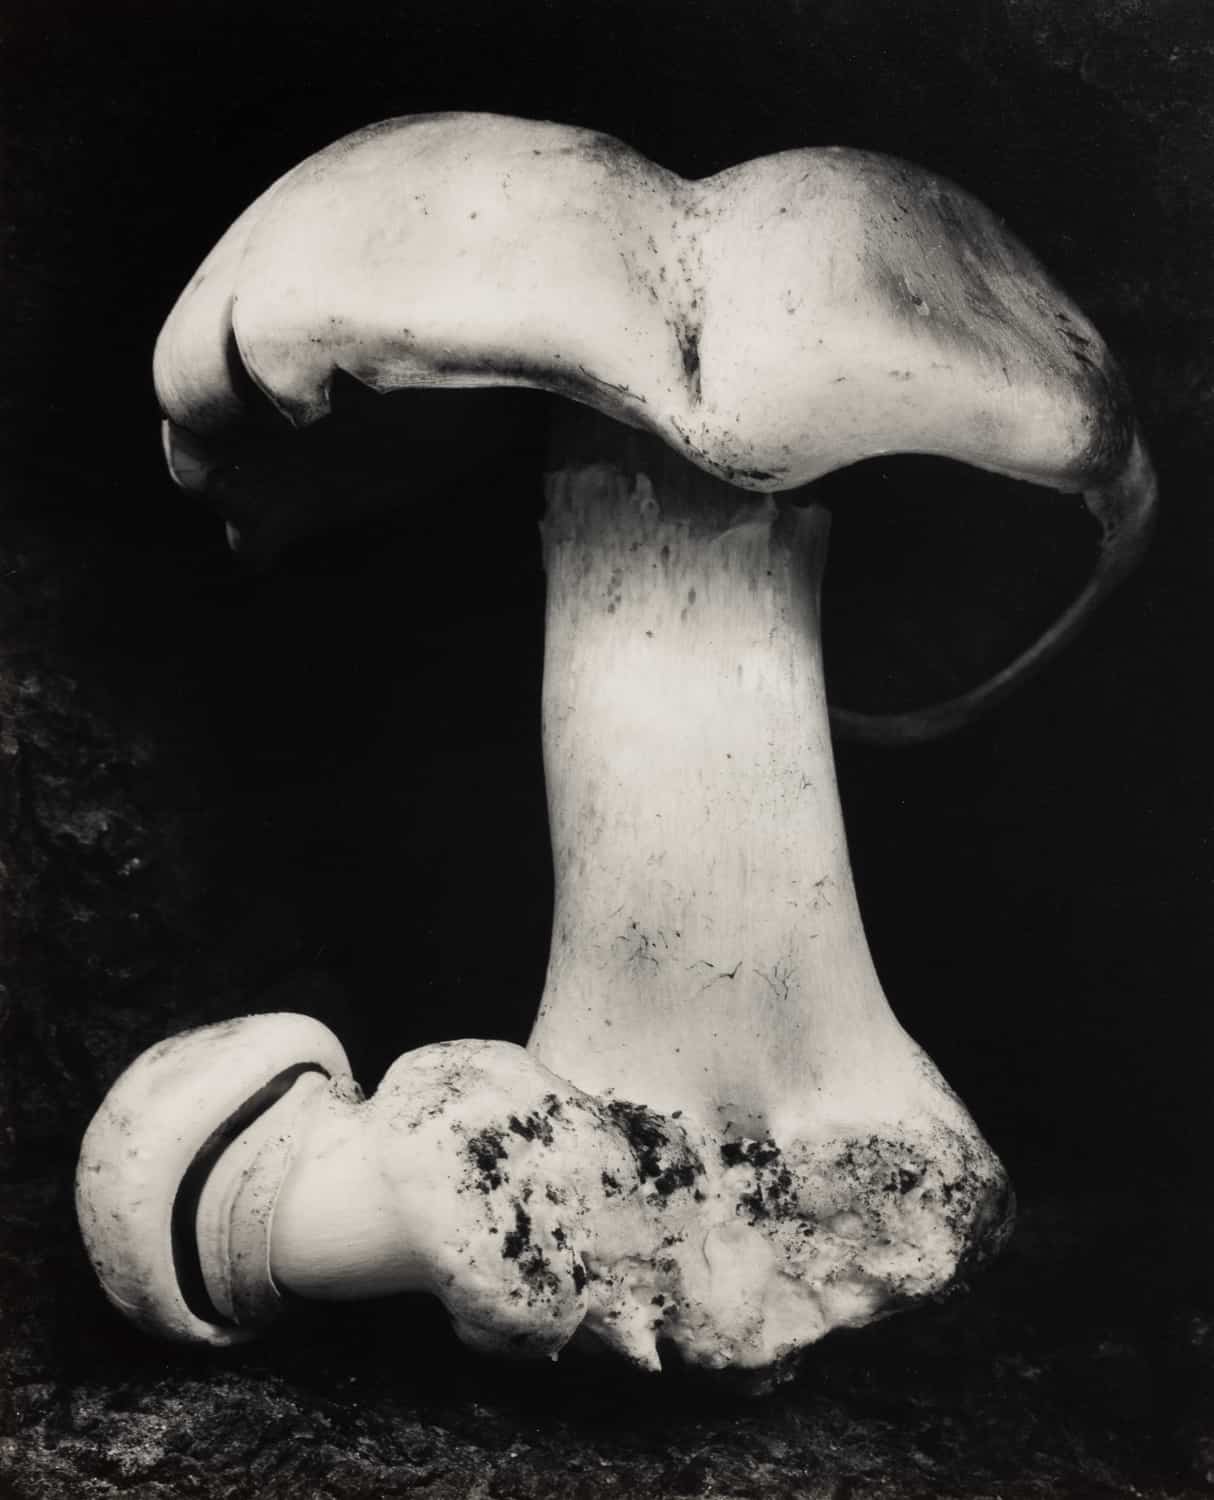 Edward Weston, Toadstool, 1931. Modern Objects, Huxley-Parlour Gallery, 3–5 Swallow St, London, W1B 4DE